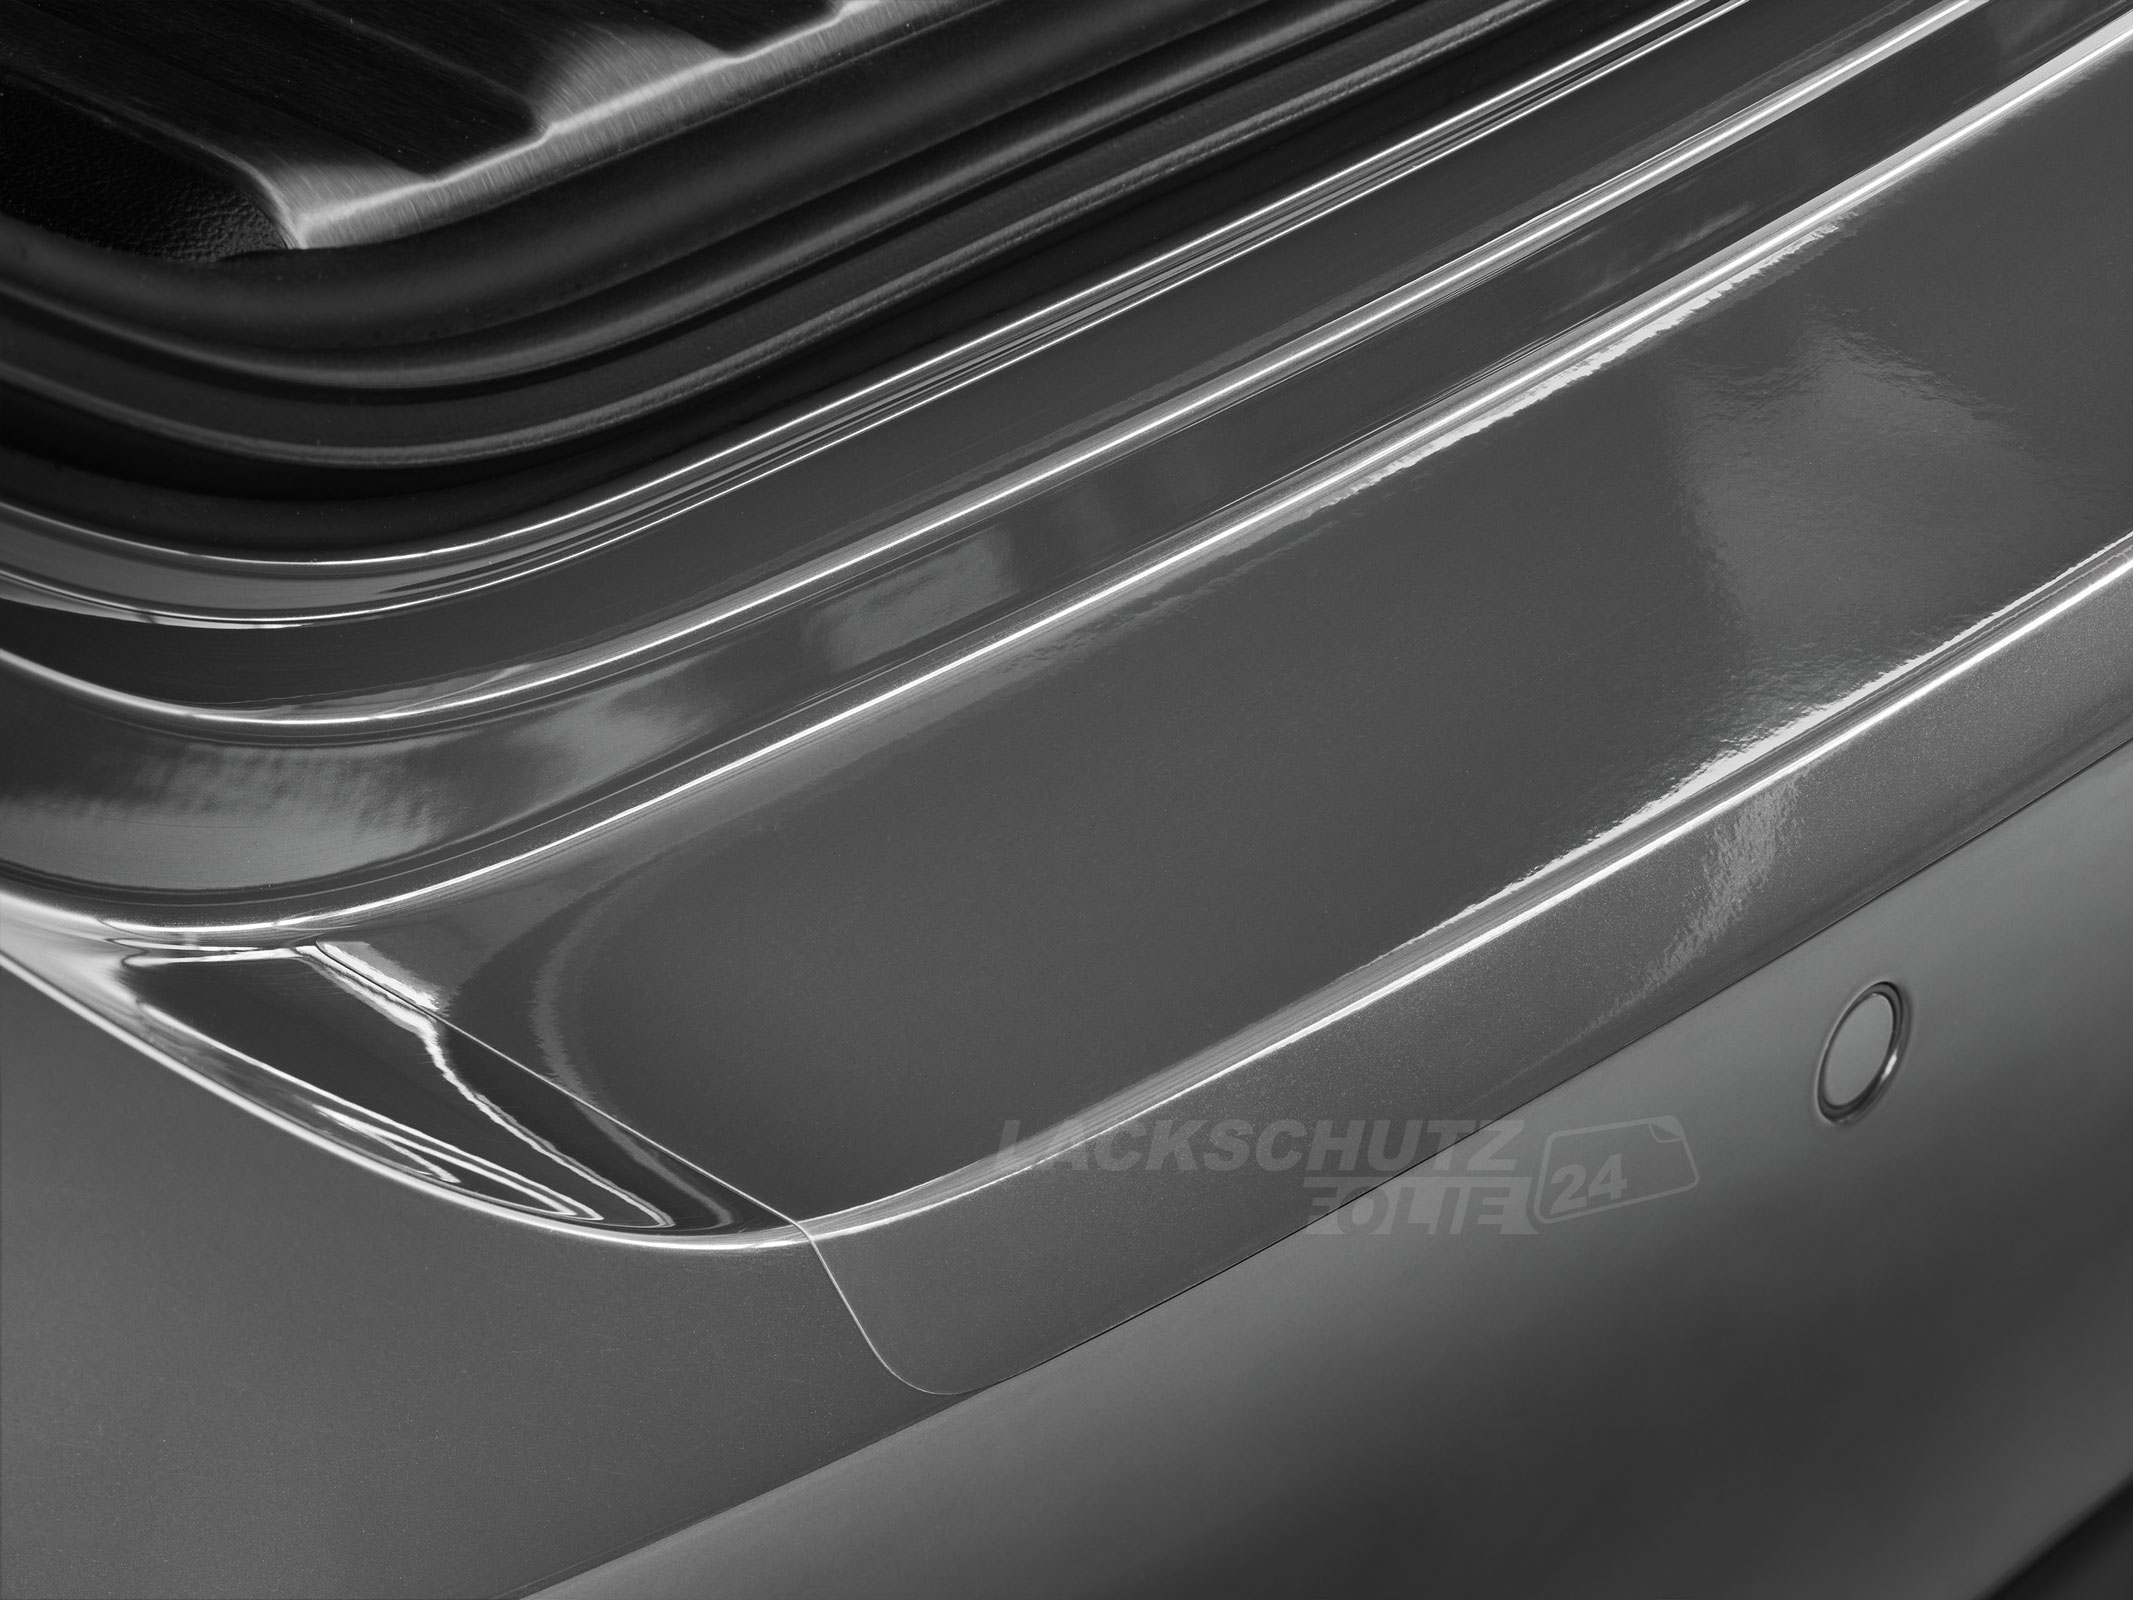 Ladekantenschutzfolie - Transparent Glatt Hochglänzend 150 µm stark für Renault Trafic (III) ab BJ 11/2014 + Facelift